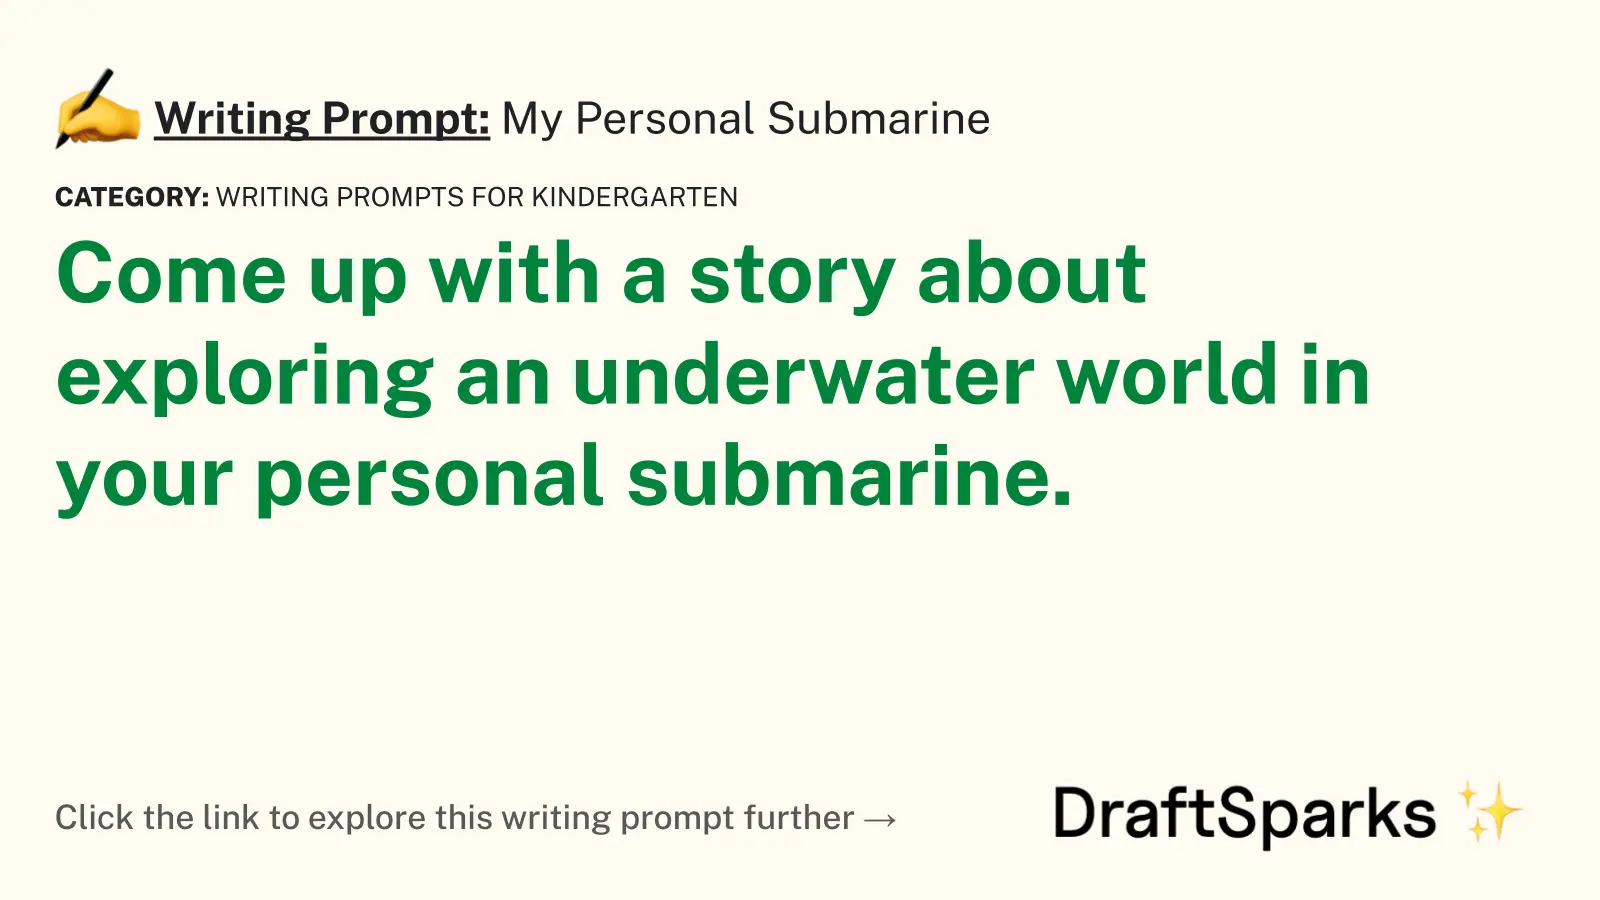 My Personal Submarine